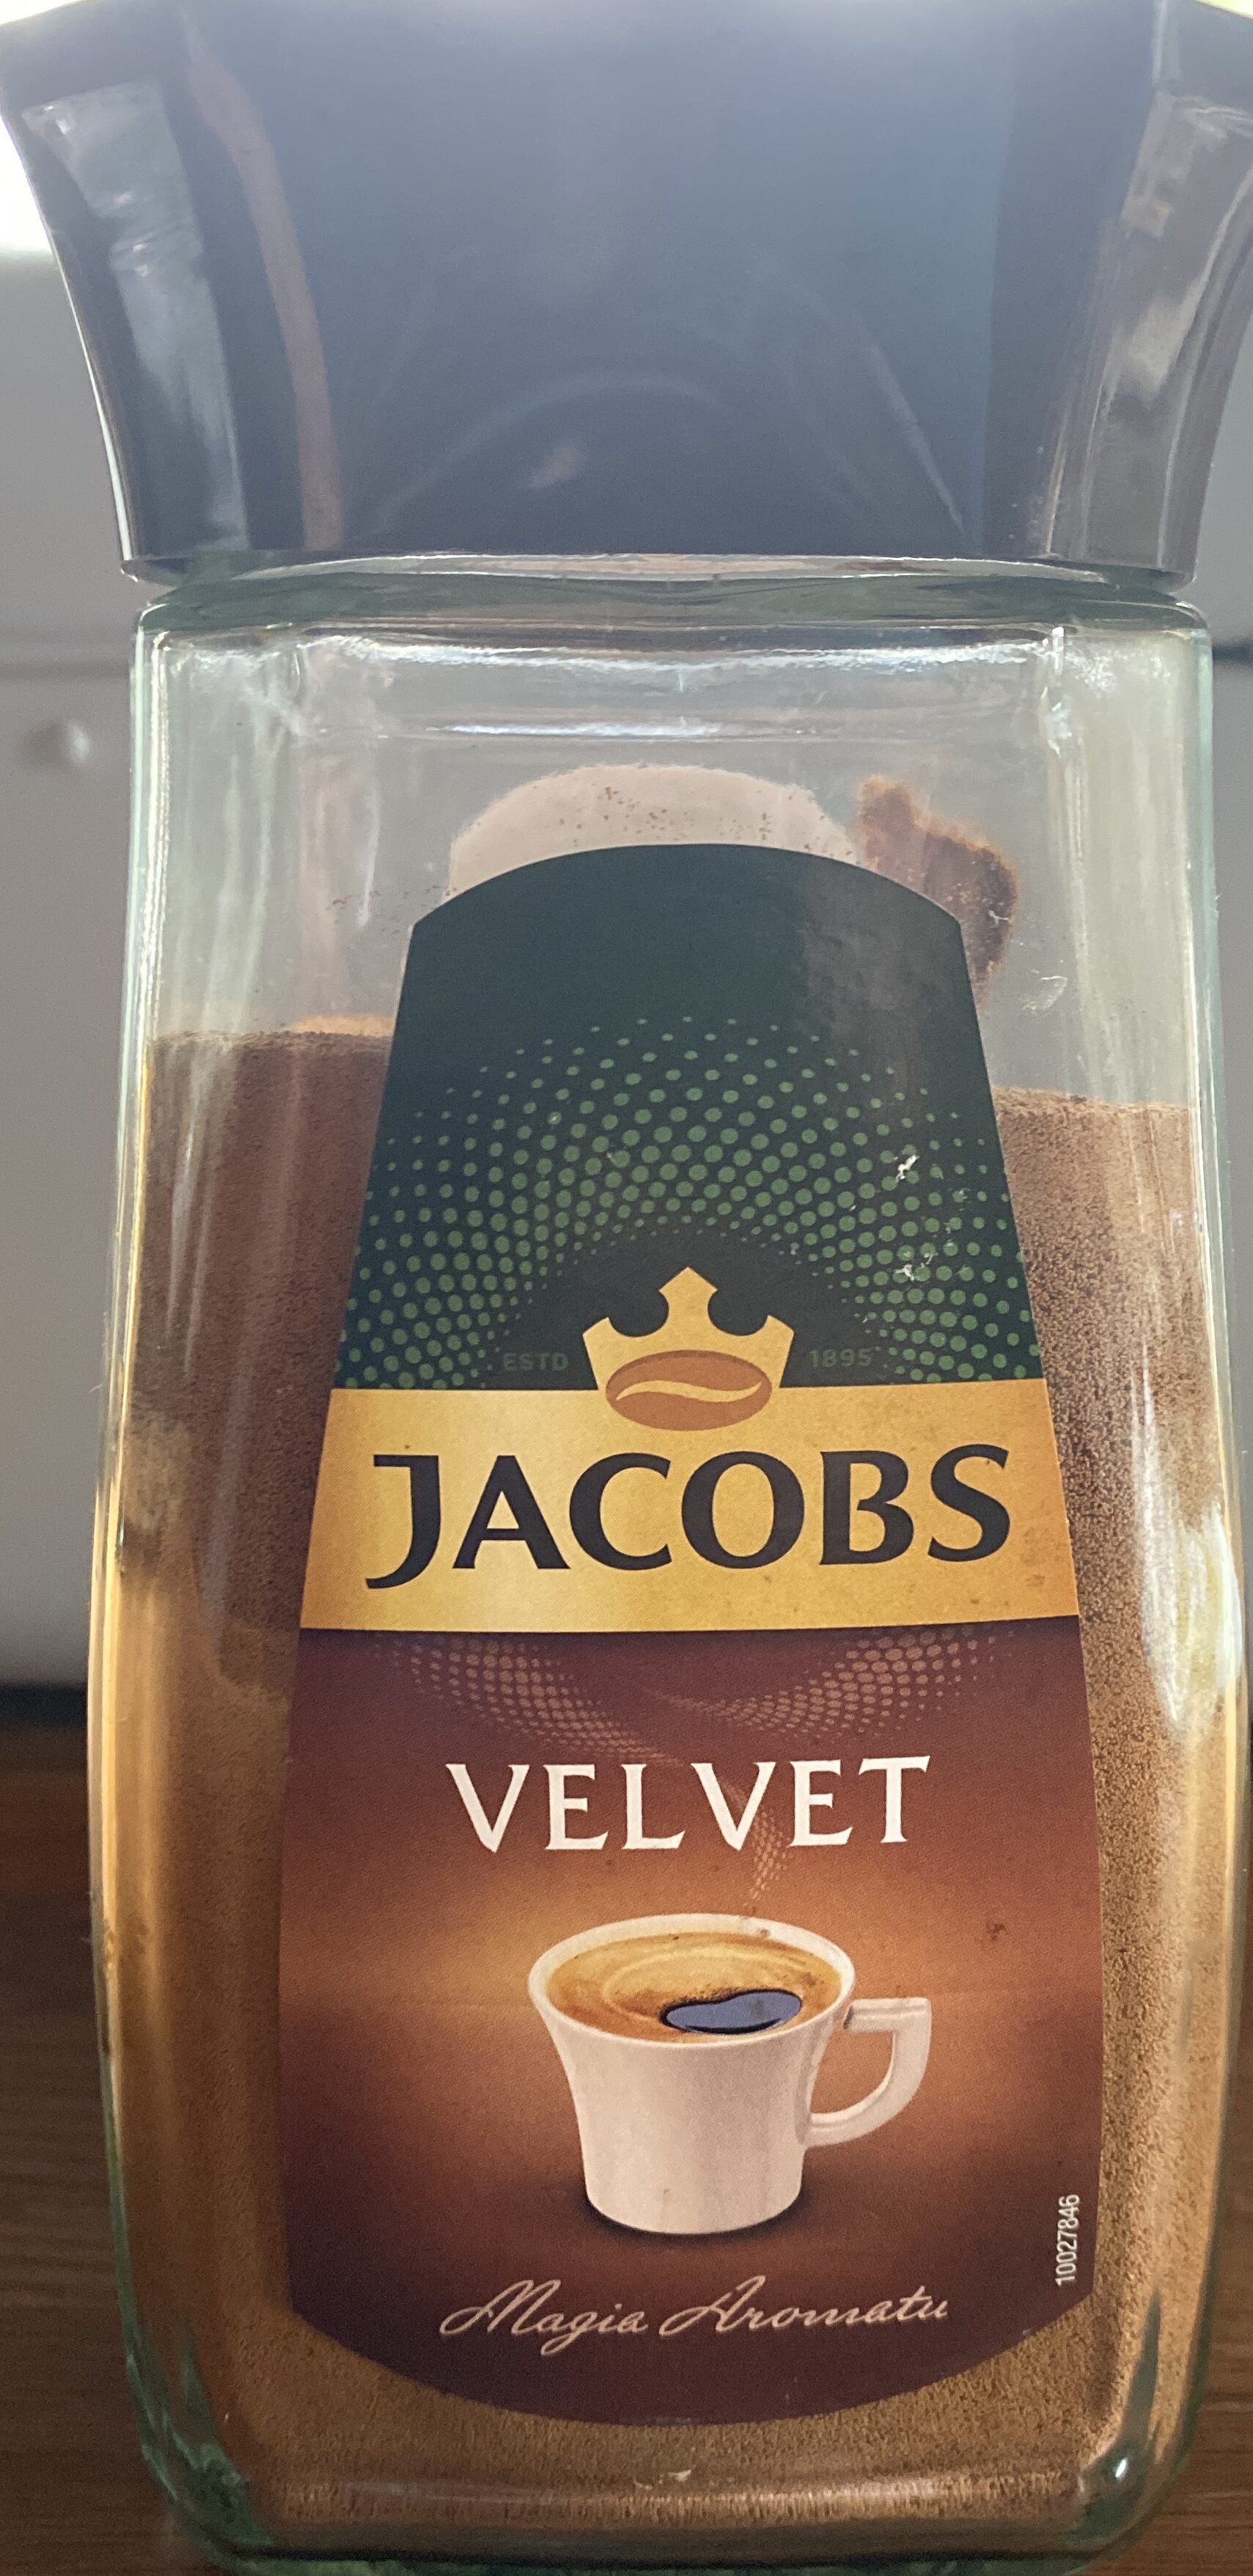 Velvet - Product